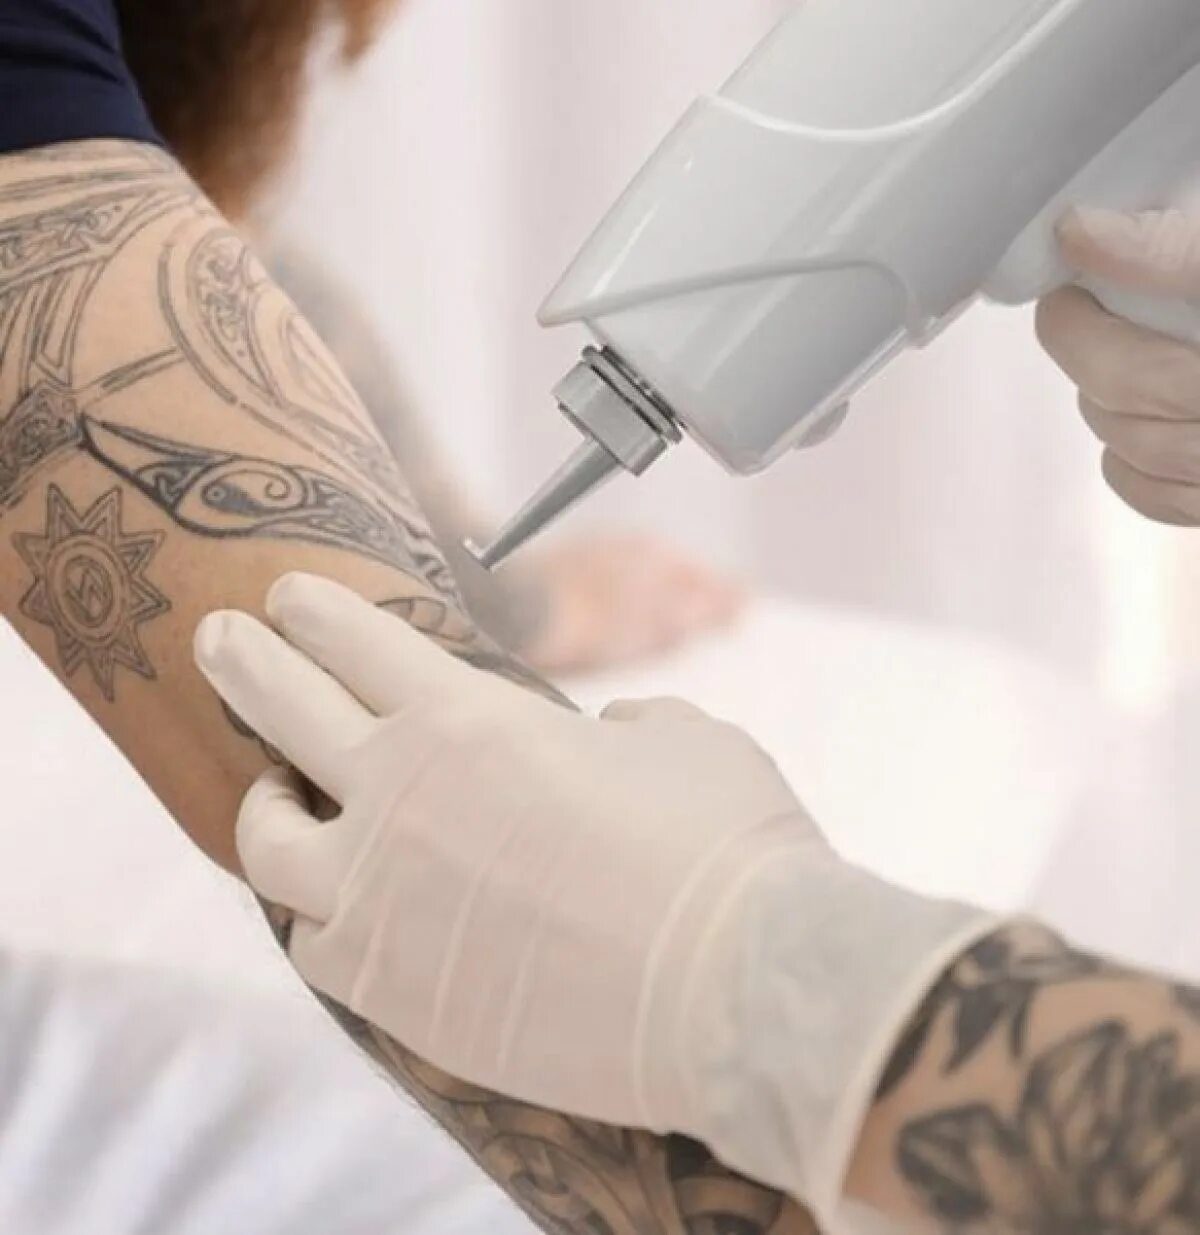 Удаление тату неодимовым. Удаление татуировок лазером. Косметическая Татуировка. Лазерное оборудование для удаления тату.